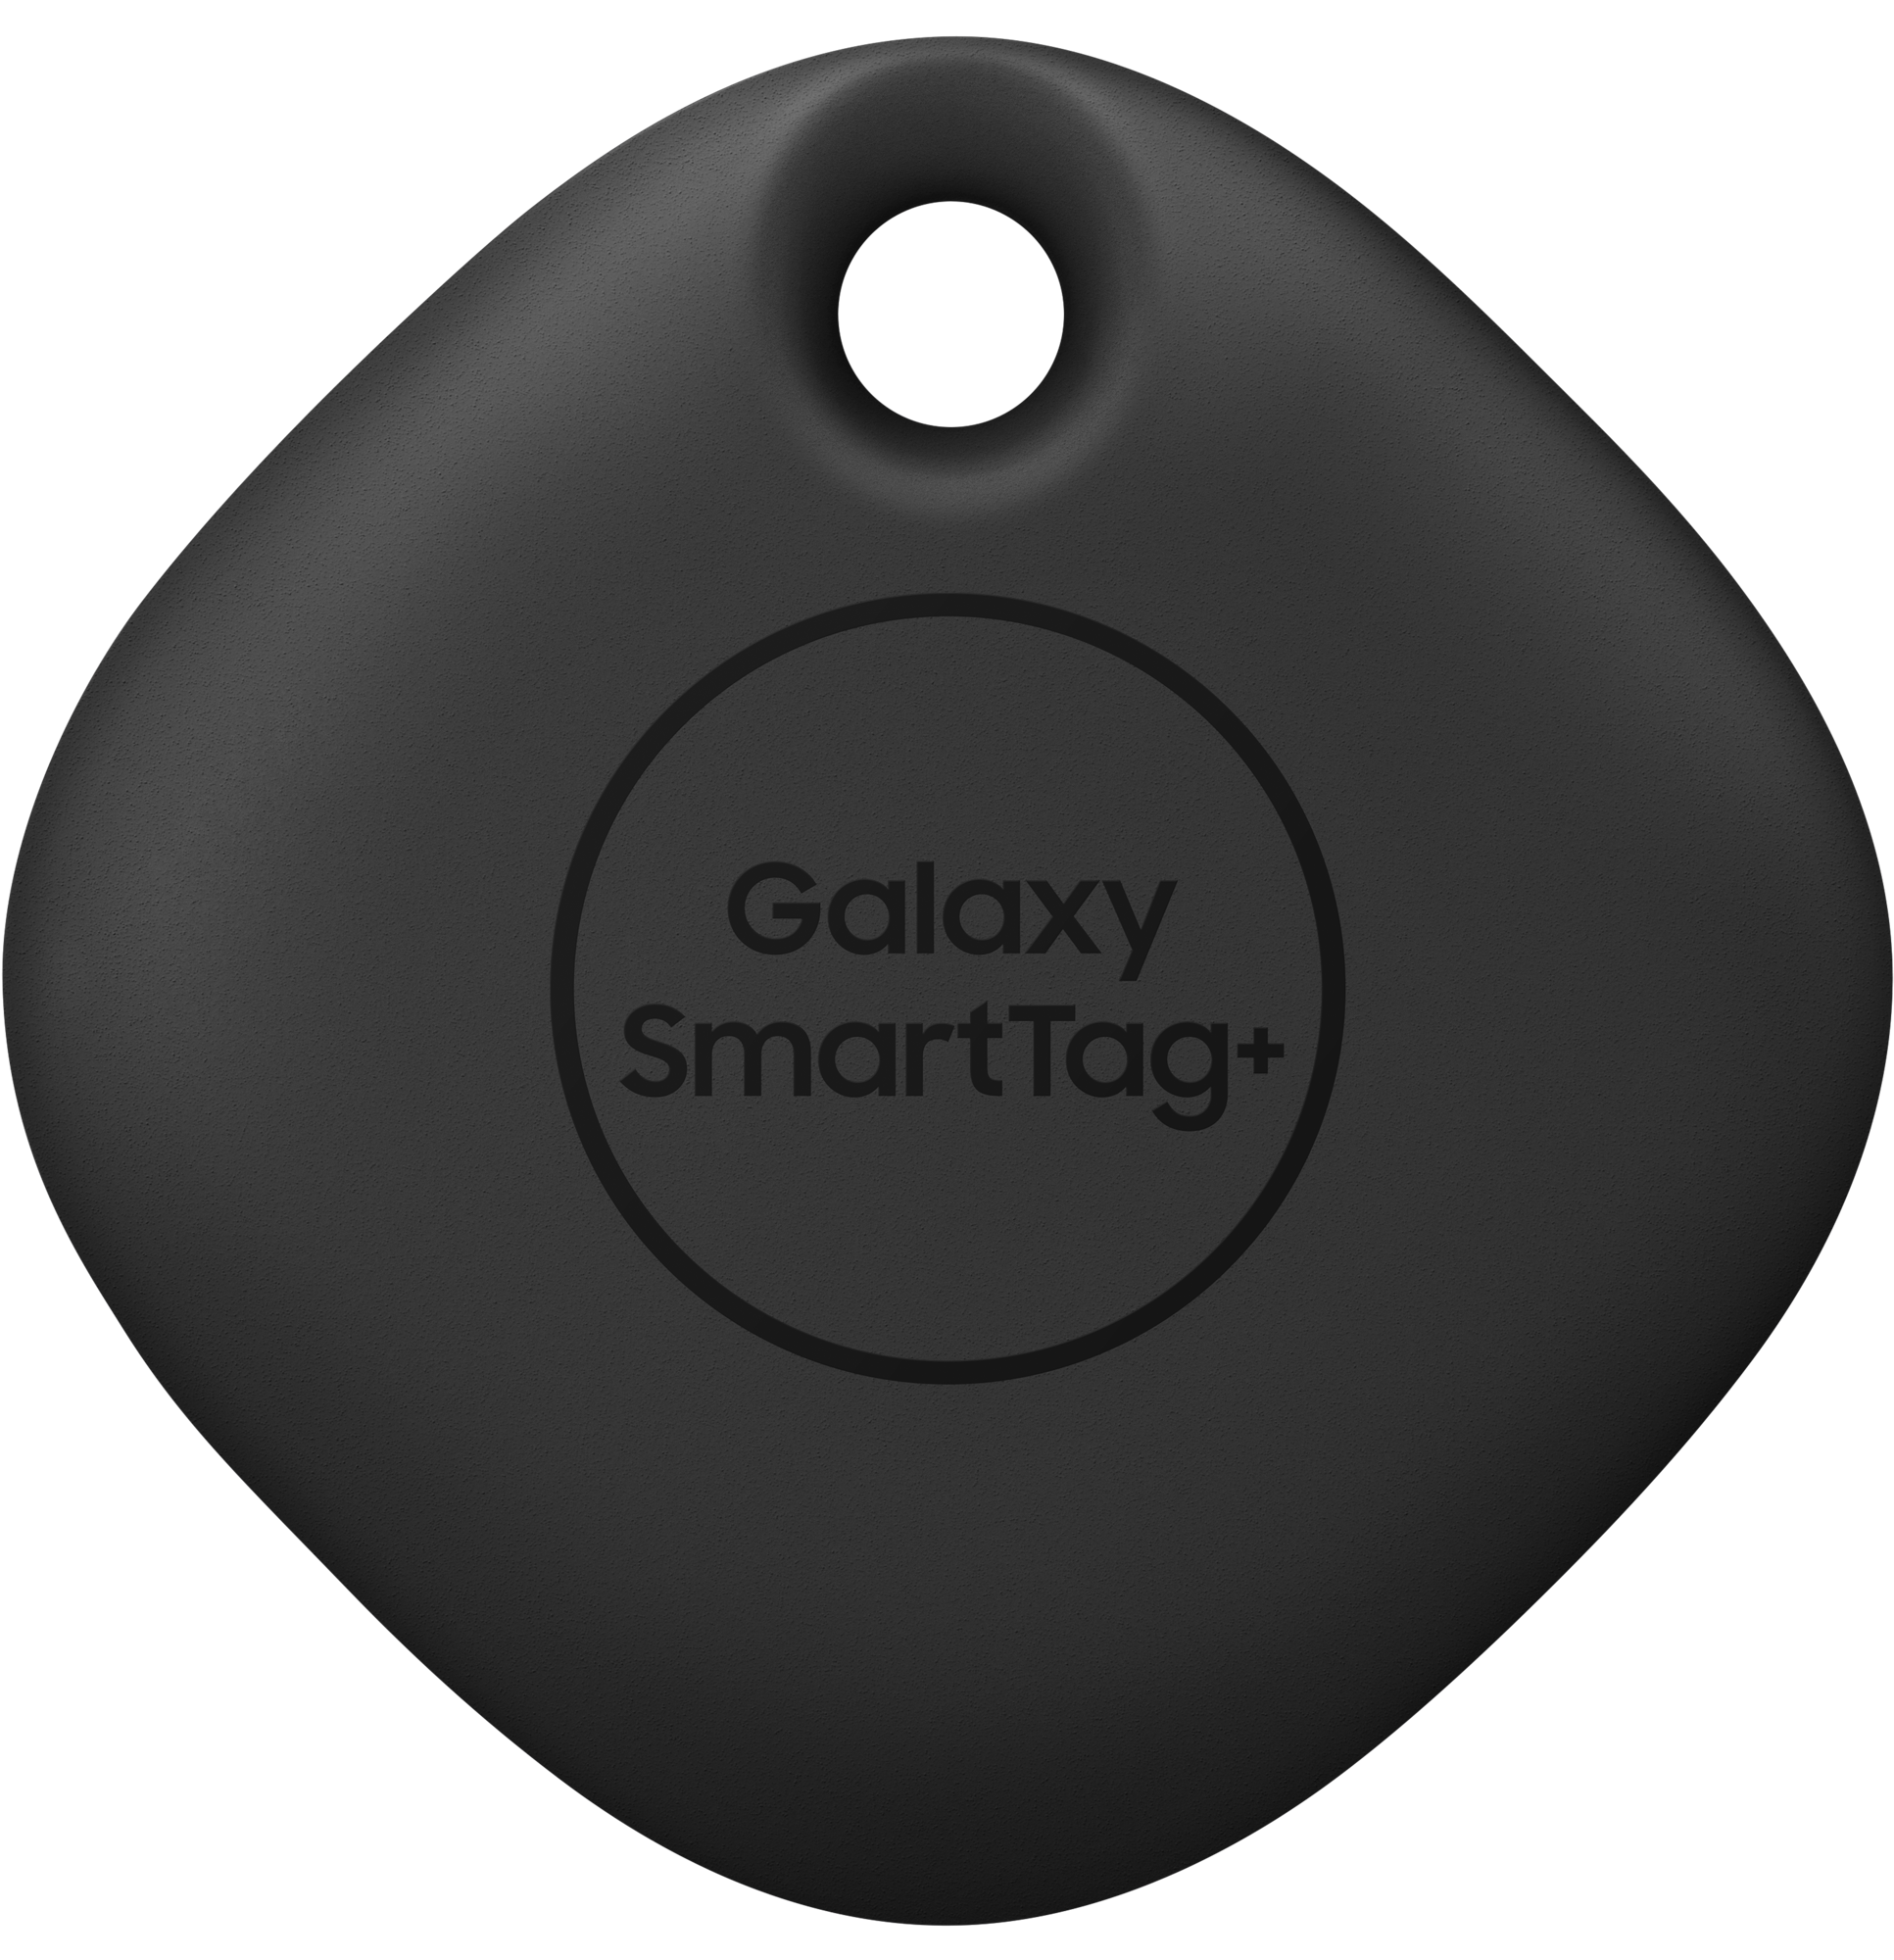 SAMSUNG Galaxy Smarttag+ Black